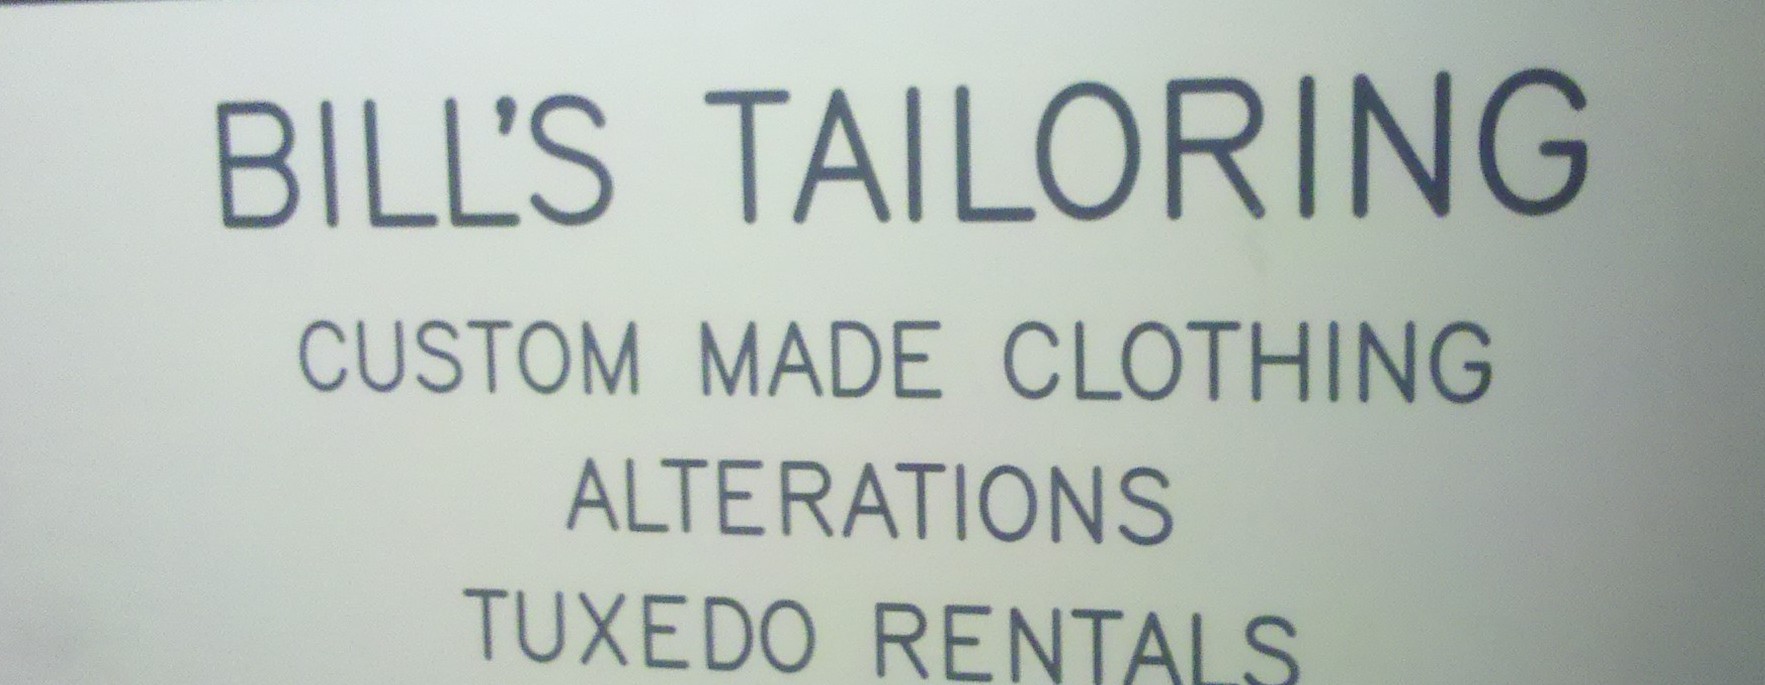 Bill's Tailor Shop